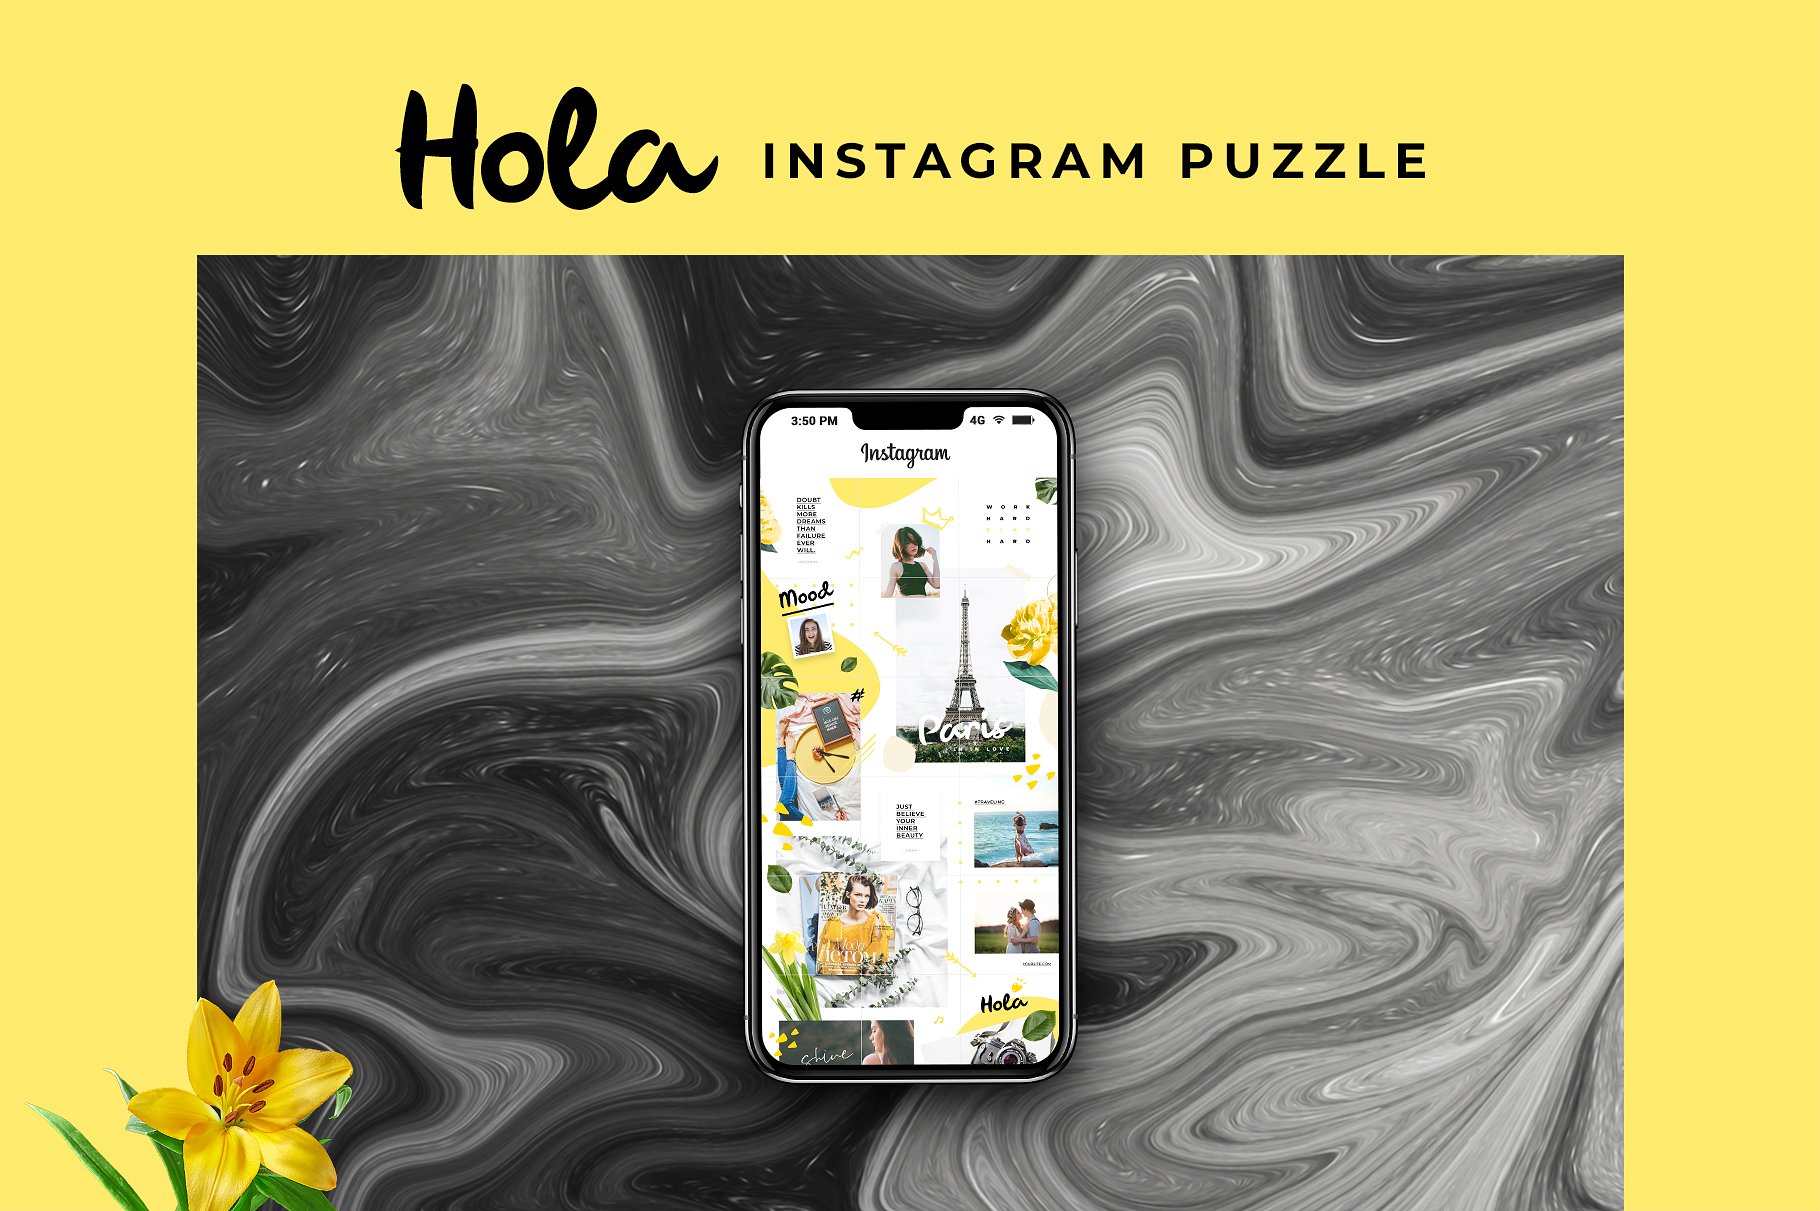 时尚极简的Instagram社交媒体模板16设计网精选 Instagram Puzzle – Hola [psd]插图(2)